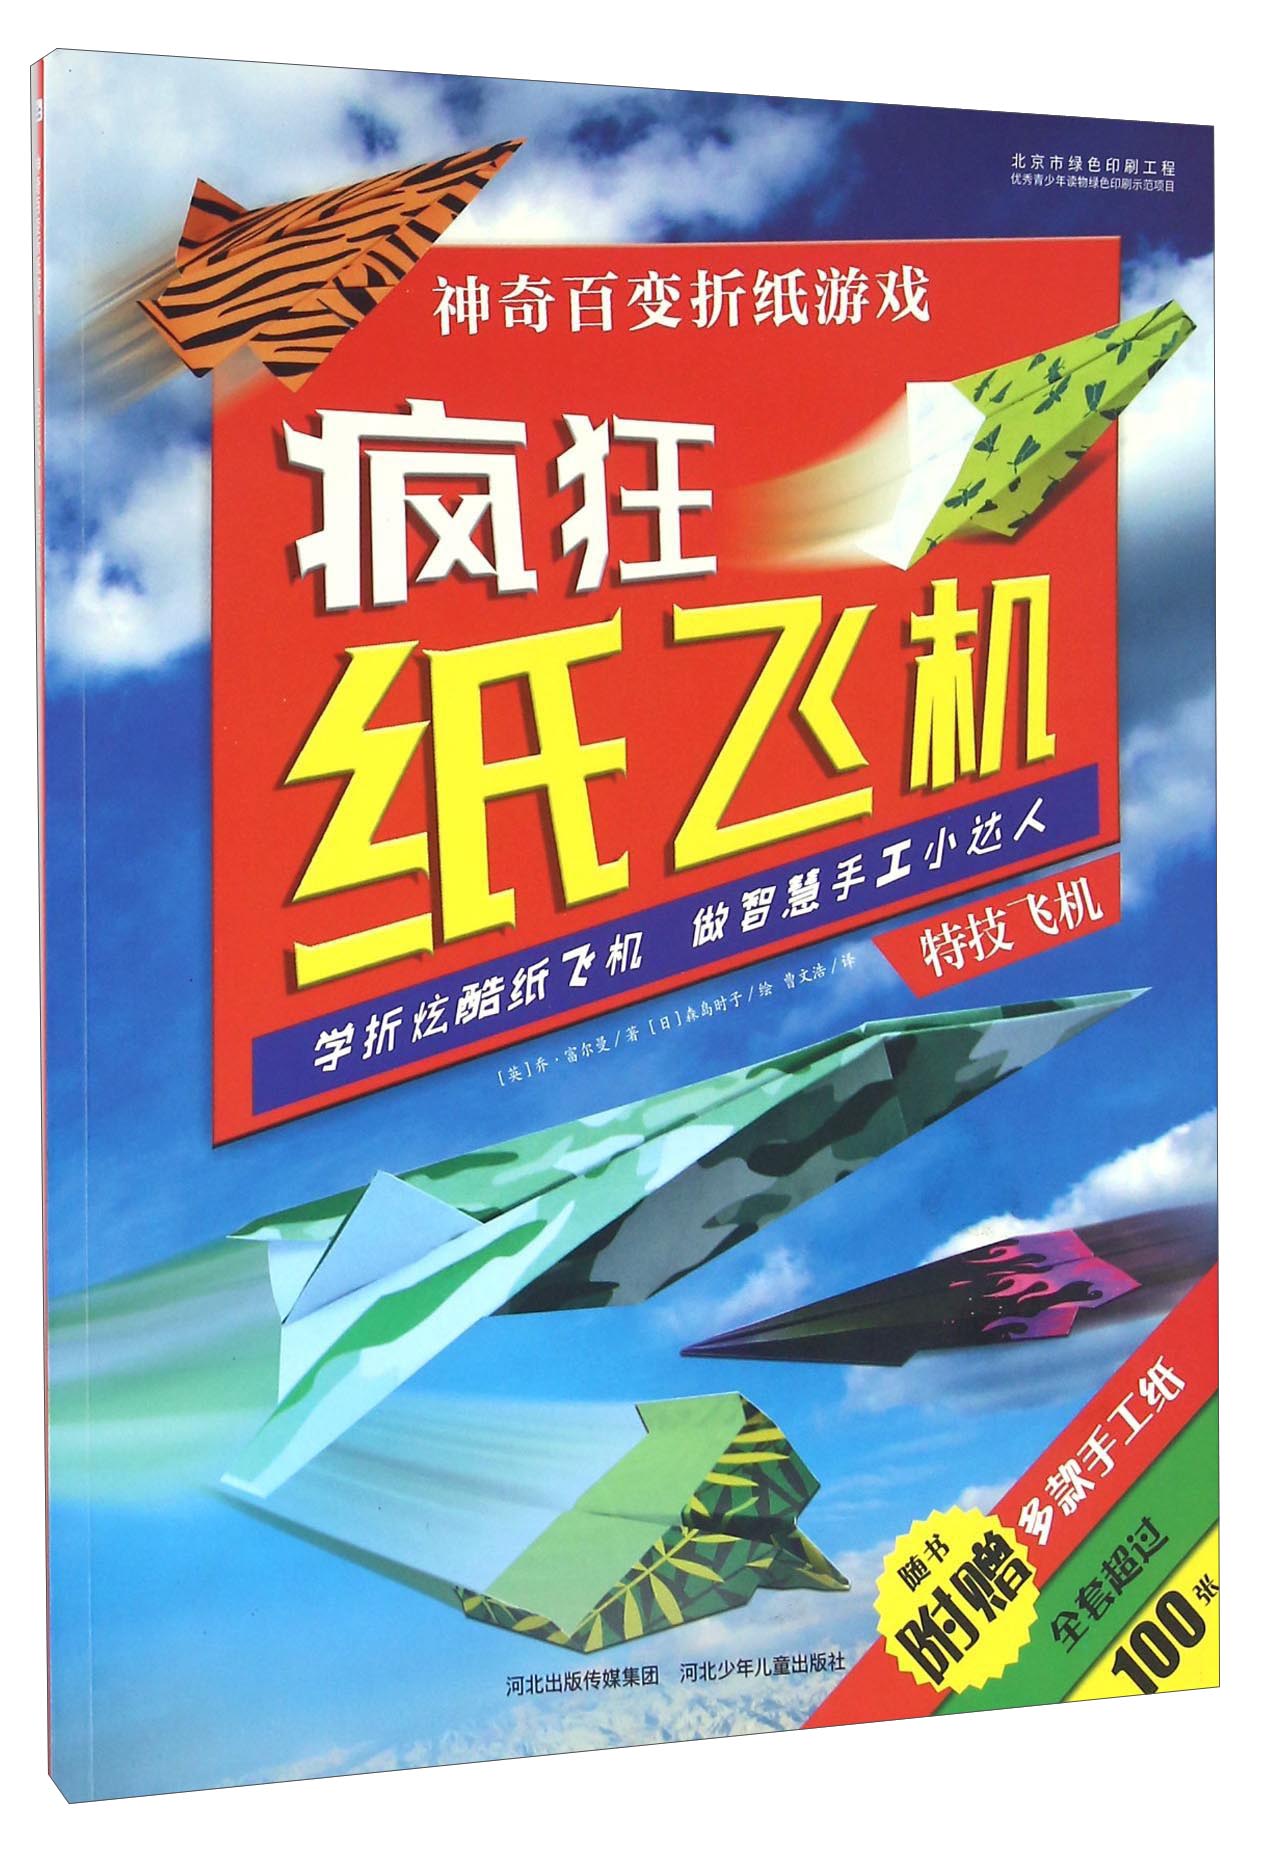 神奇百变折纸游戏：疯狂纸飞机 特技飞机